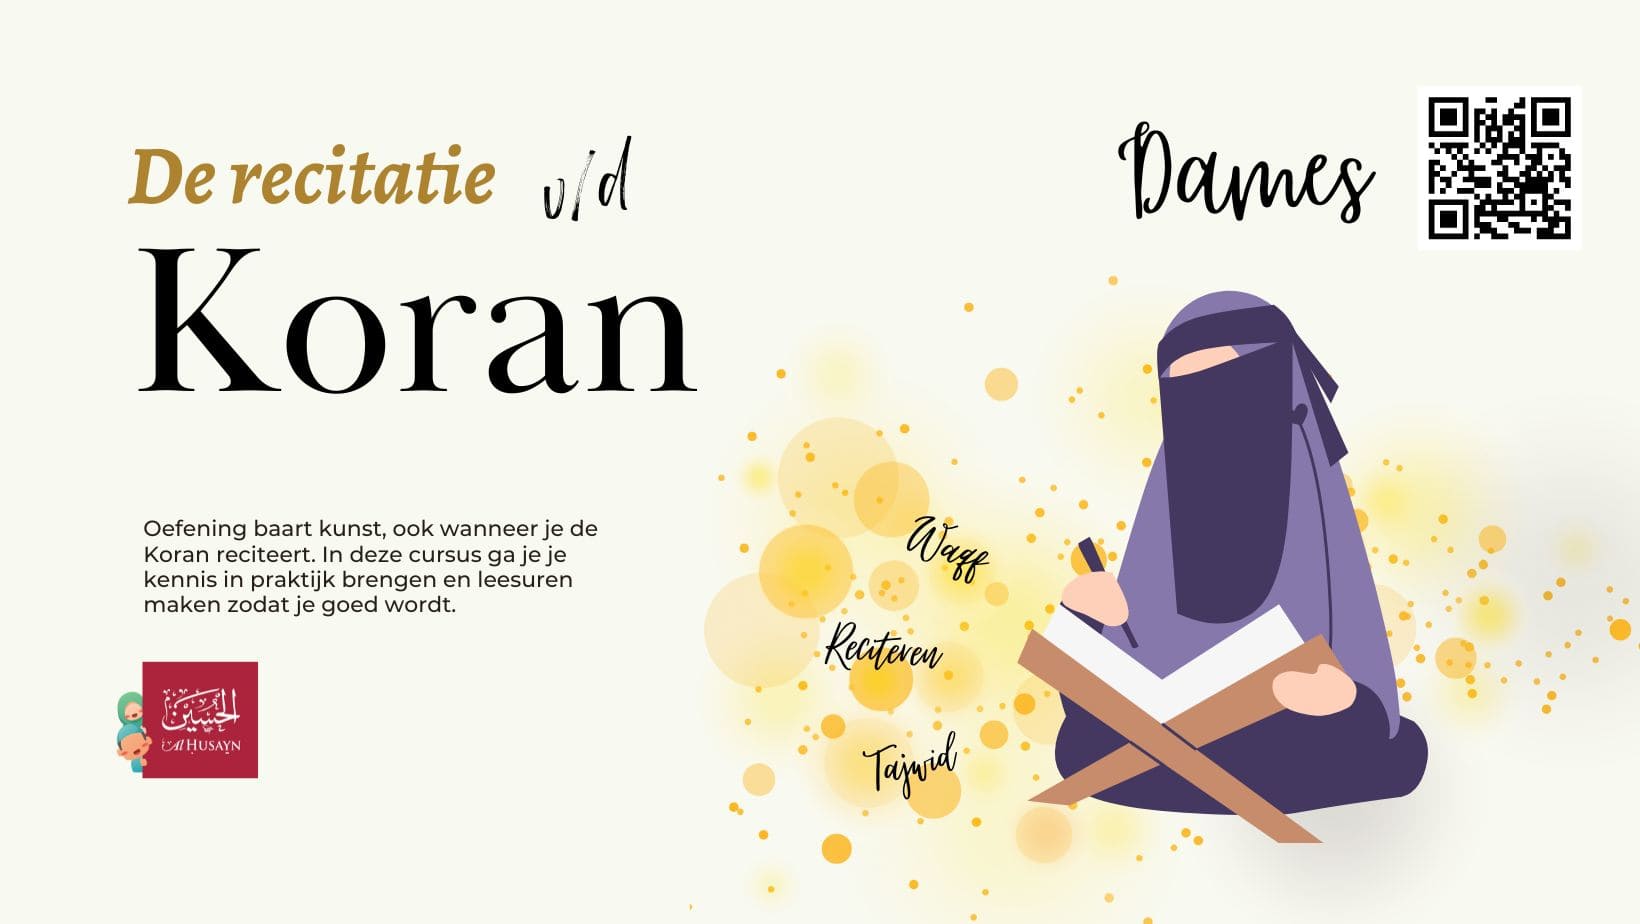 De recitatie van de Koran - Dames (1)